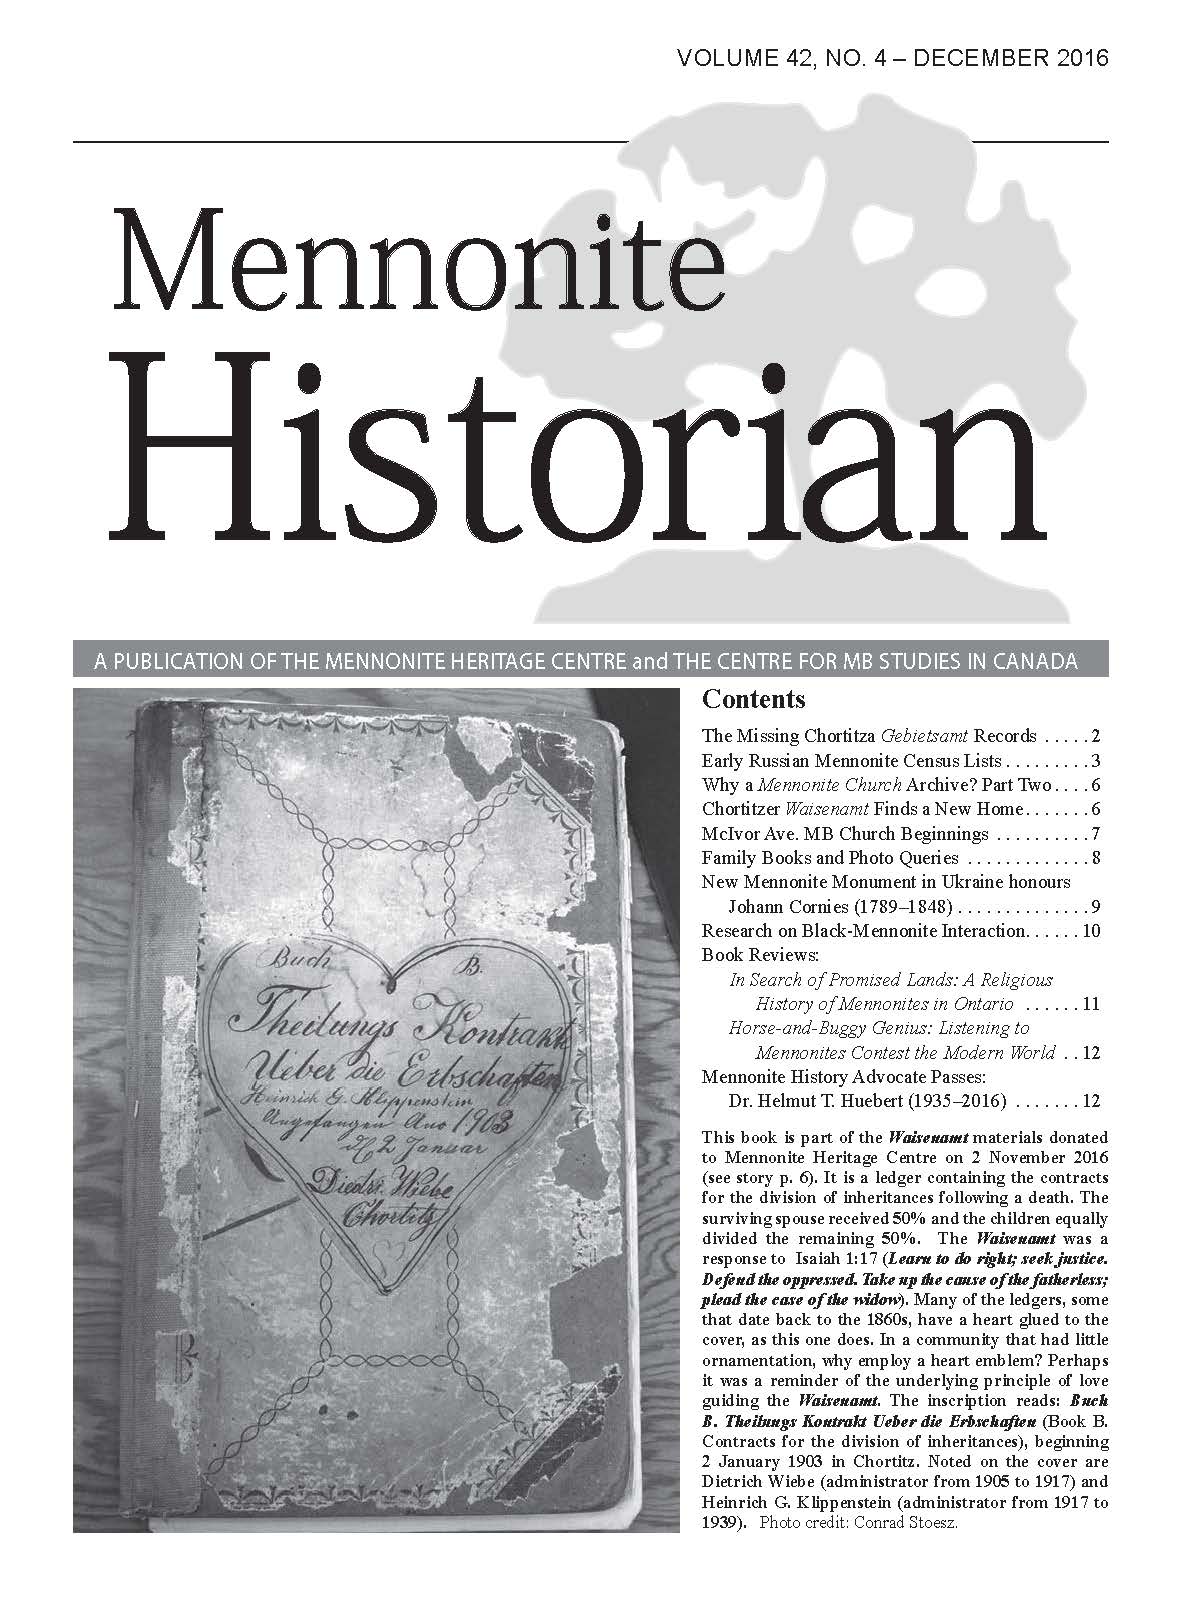 Mennonite Historian (December 2016)